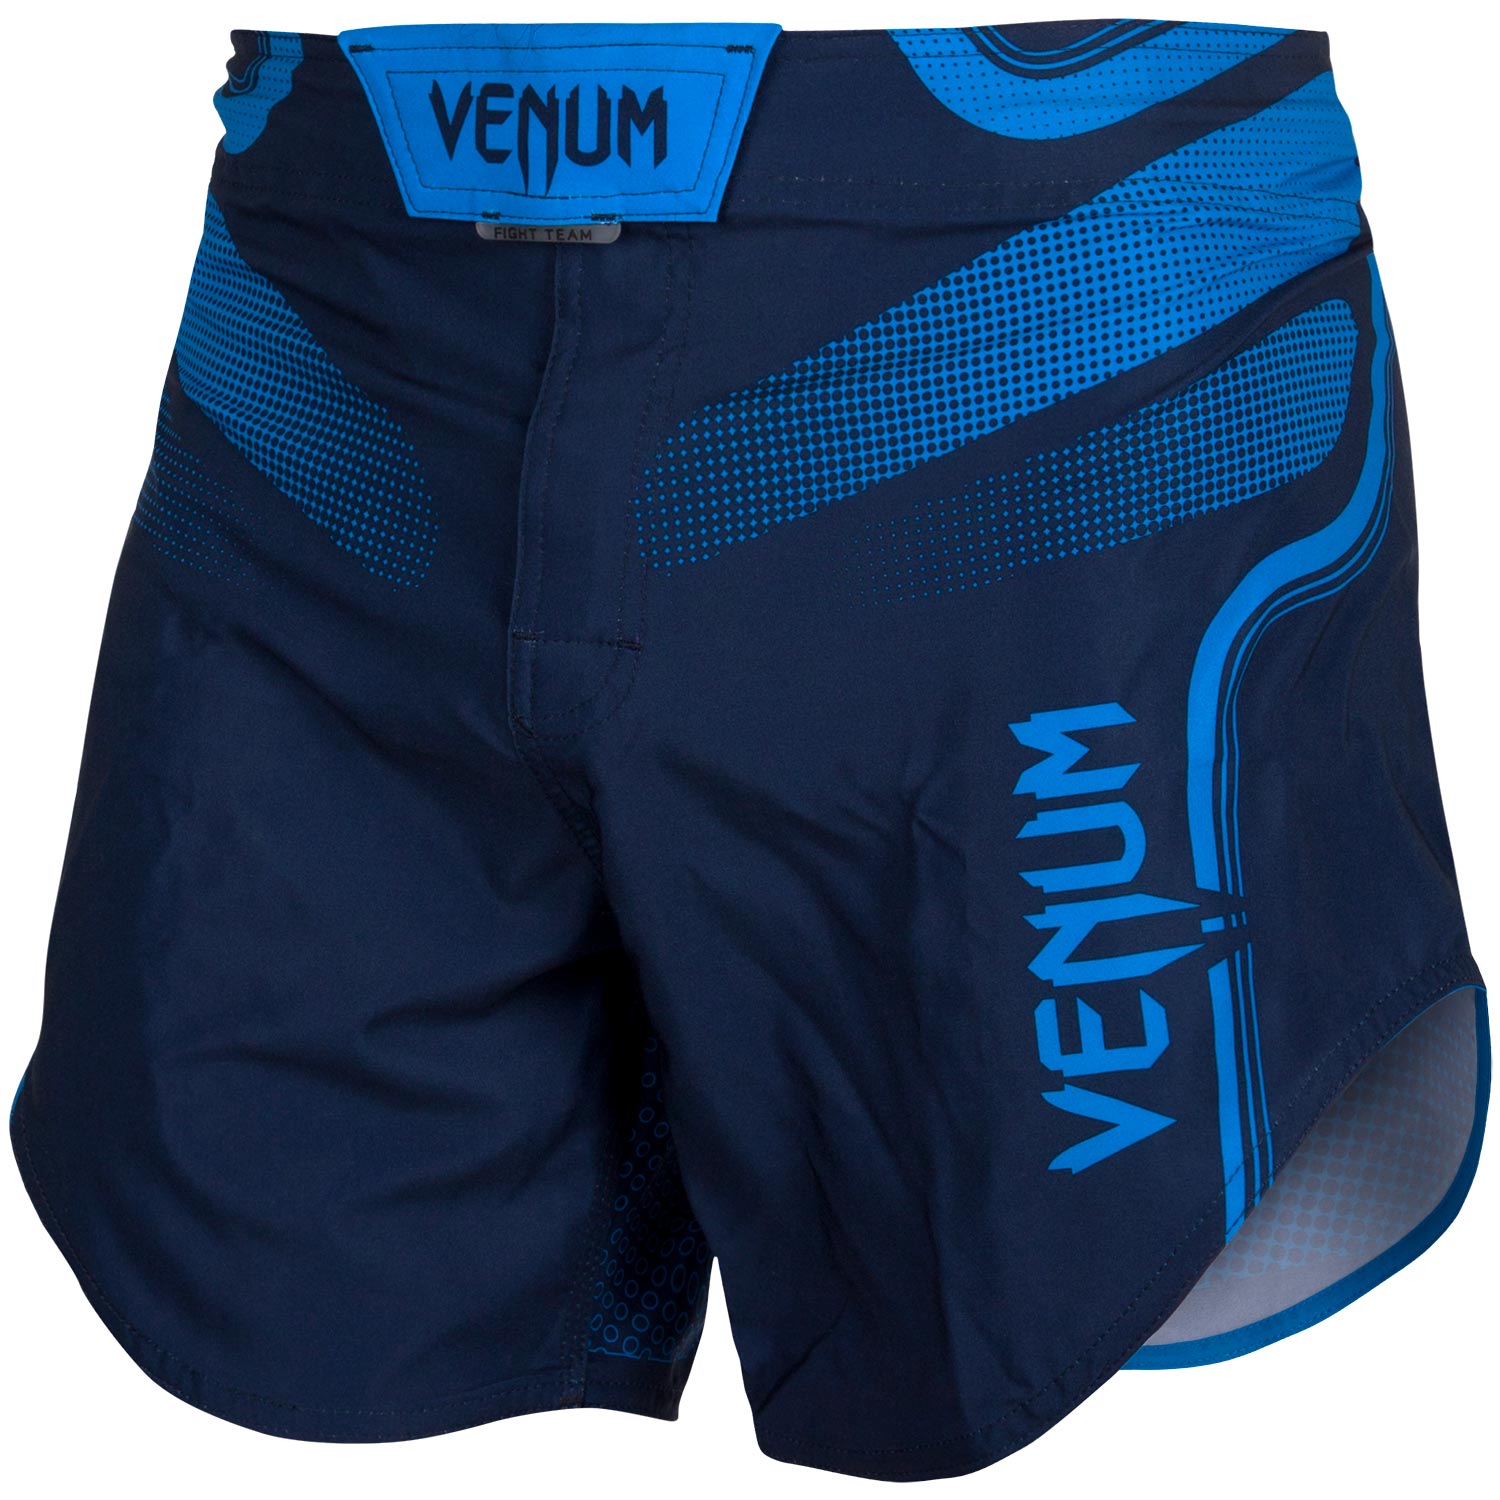 Pantalones cortos hombres – Venum España